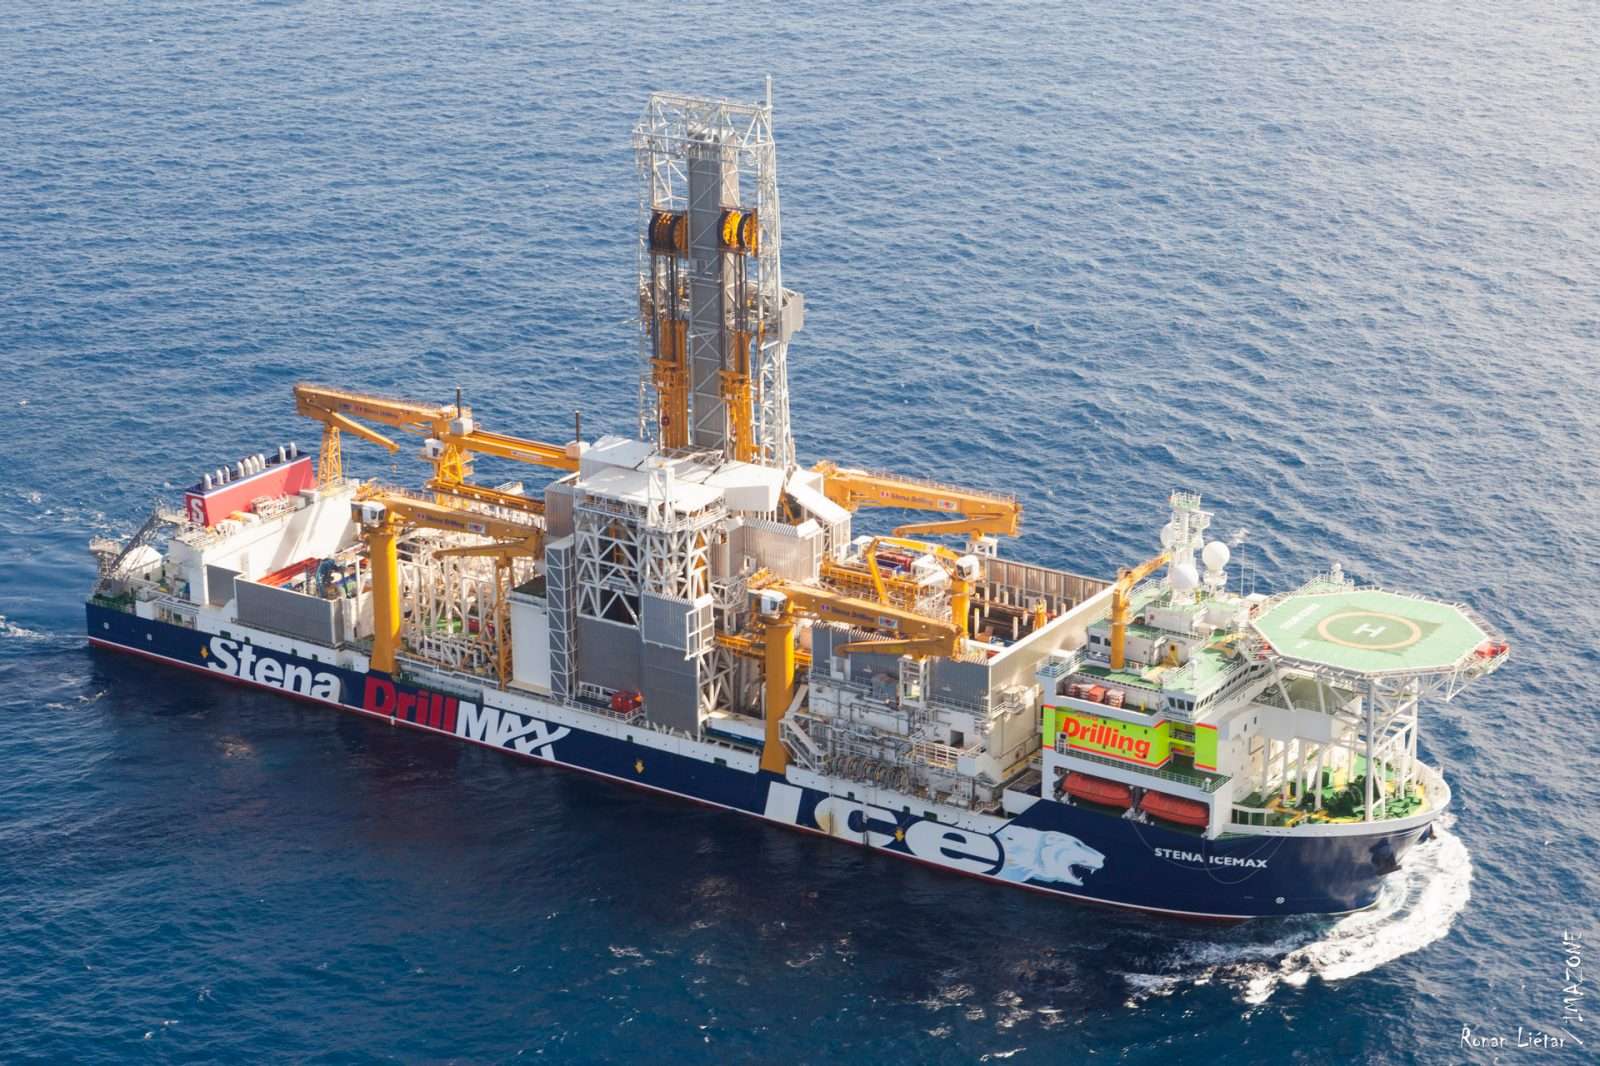 Σε 48 ώρες το γεωτρύπανο της Exxon Mobil κάνει γεώτρηση στο οικόπεδο 10 της κυπριακής ΑΟΖ